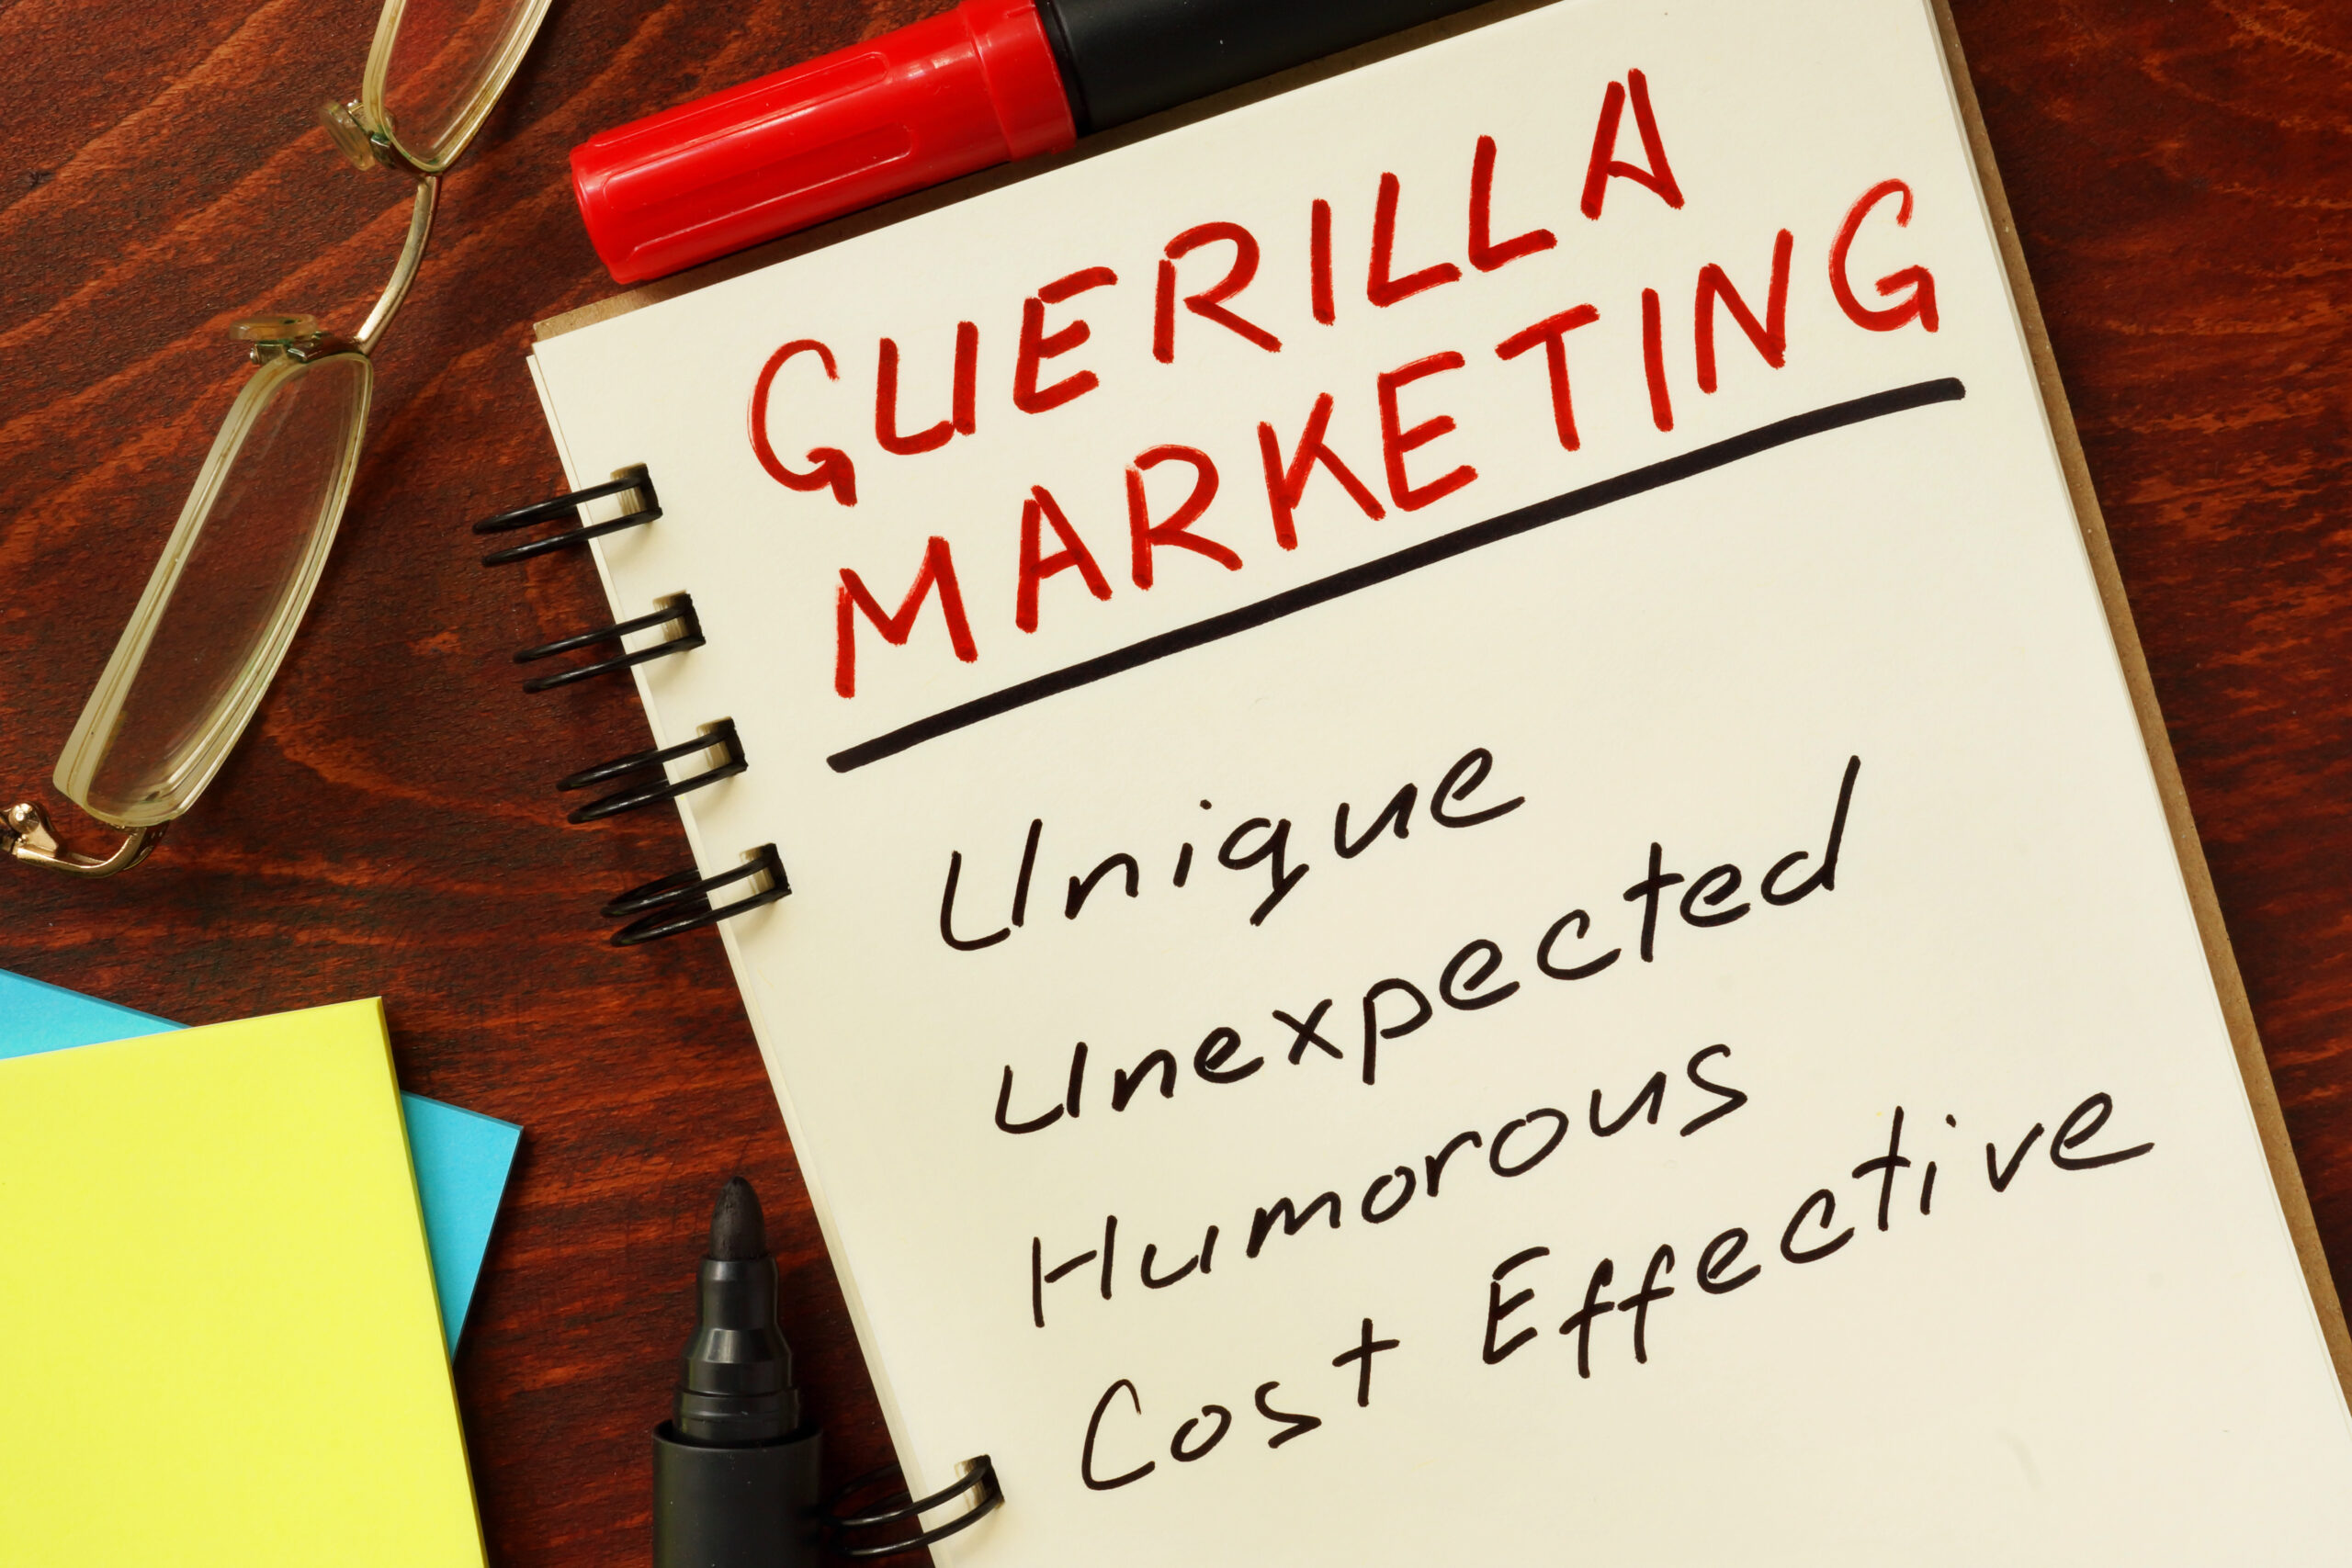 guerilla marketing - unique, unexpected, humorous, cost effective, pentru promovarea produsului